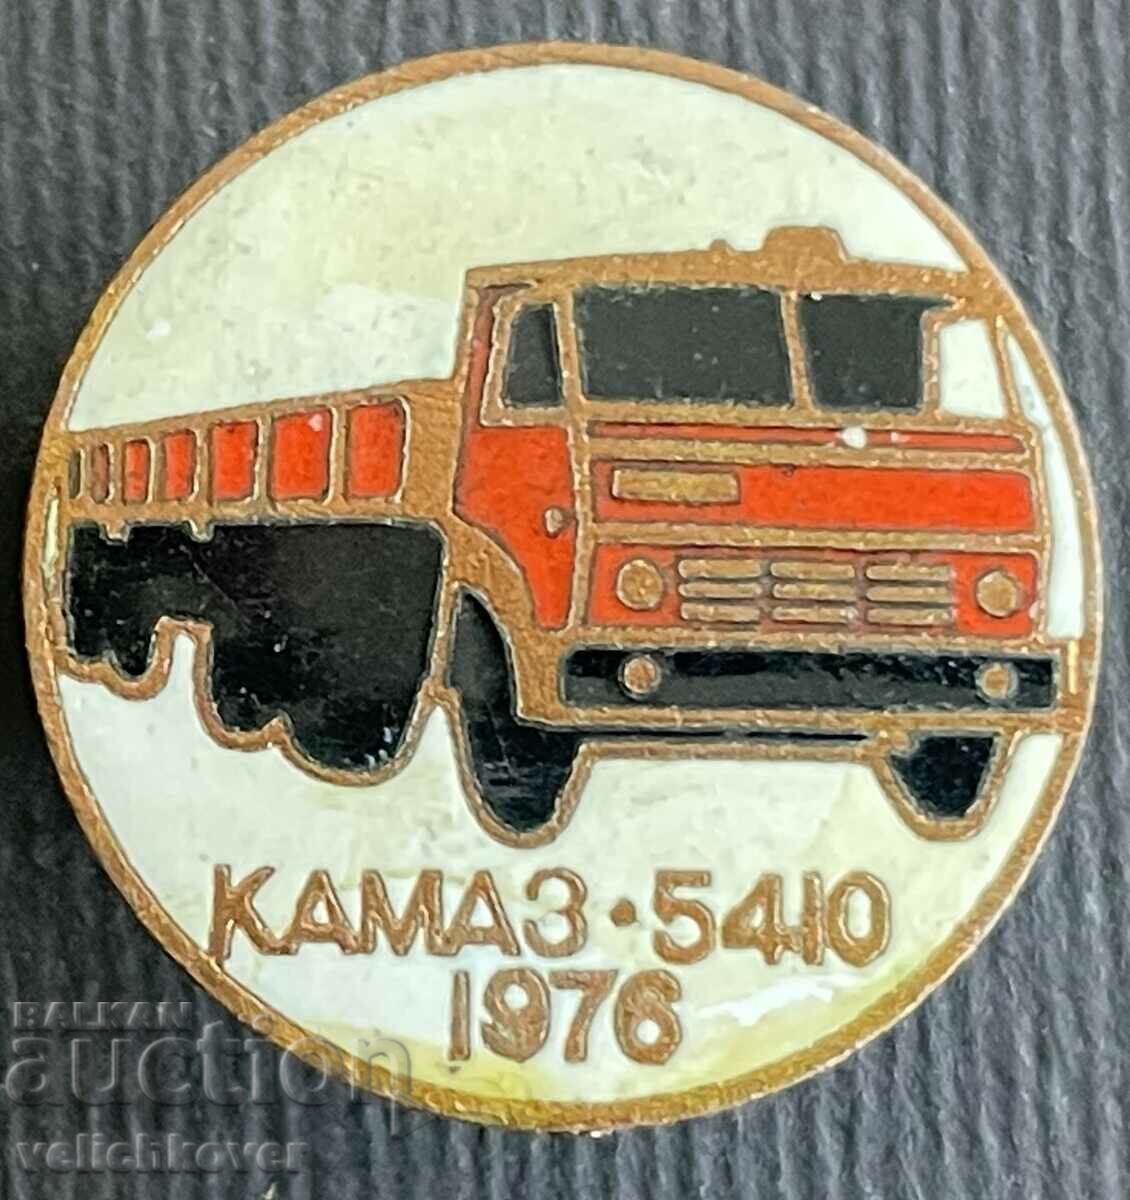 35757 Σήμα ΕΣΣΔ Truck Kamaz 5410 μοντέλο 1976. ΗΛΕΚΤΡΟΝΙΚΗ ΔΙΕΥΘΥΝΣΗ